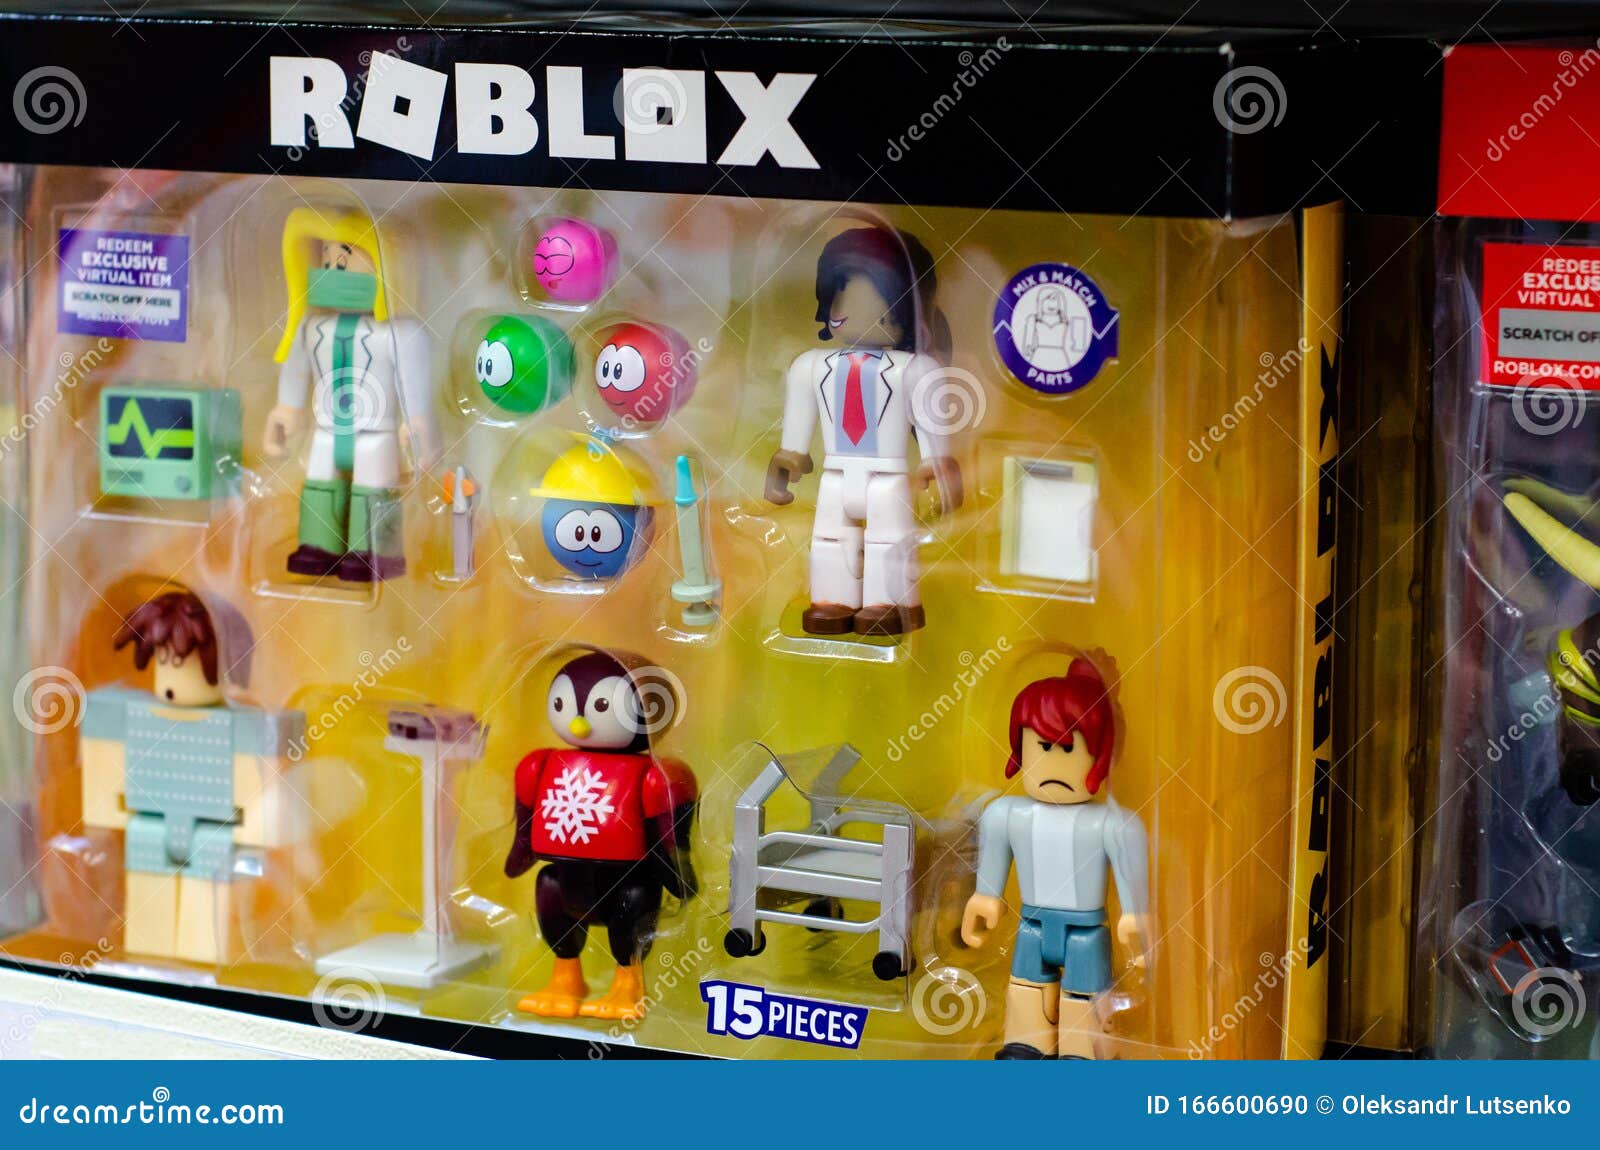 Roblox AUT sans, 興趣及遊戲, 玩具& 遊戲類- Carousell